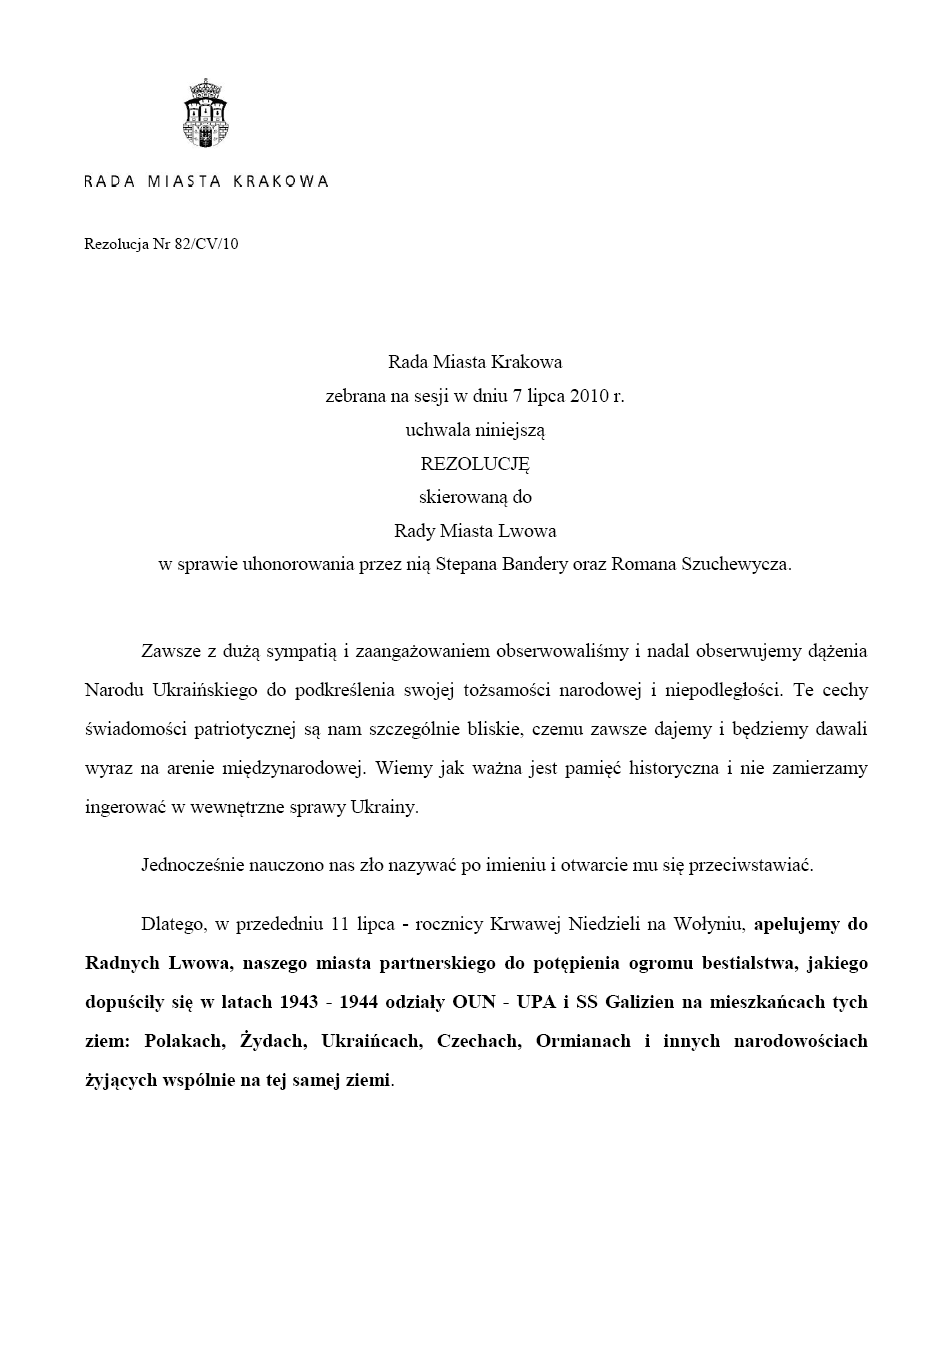 rezolucja_rady_krrakowa_82-cv-10_od_7.07.2010._str._1.png